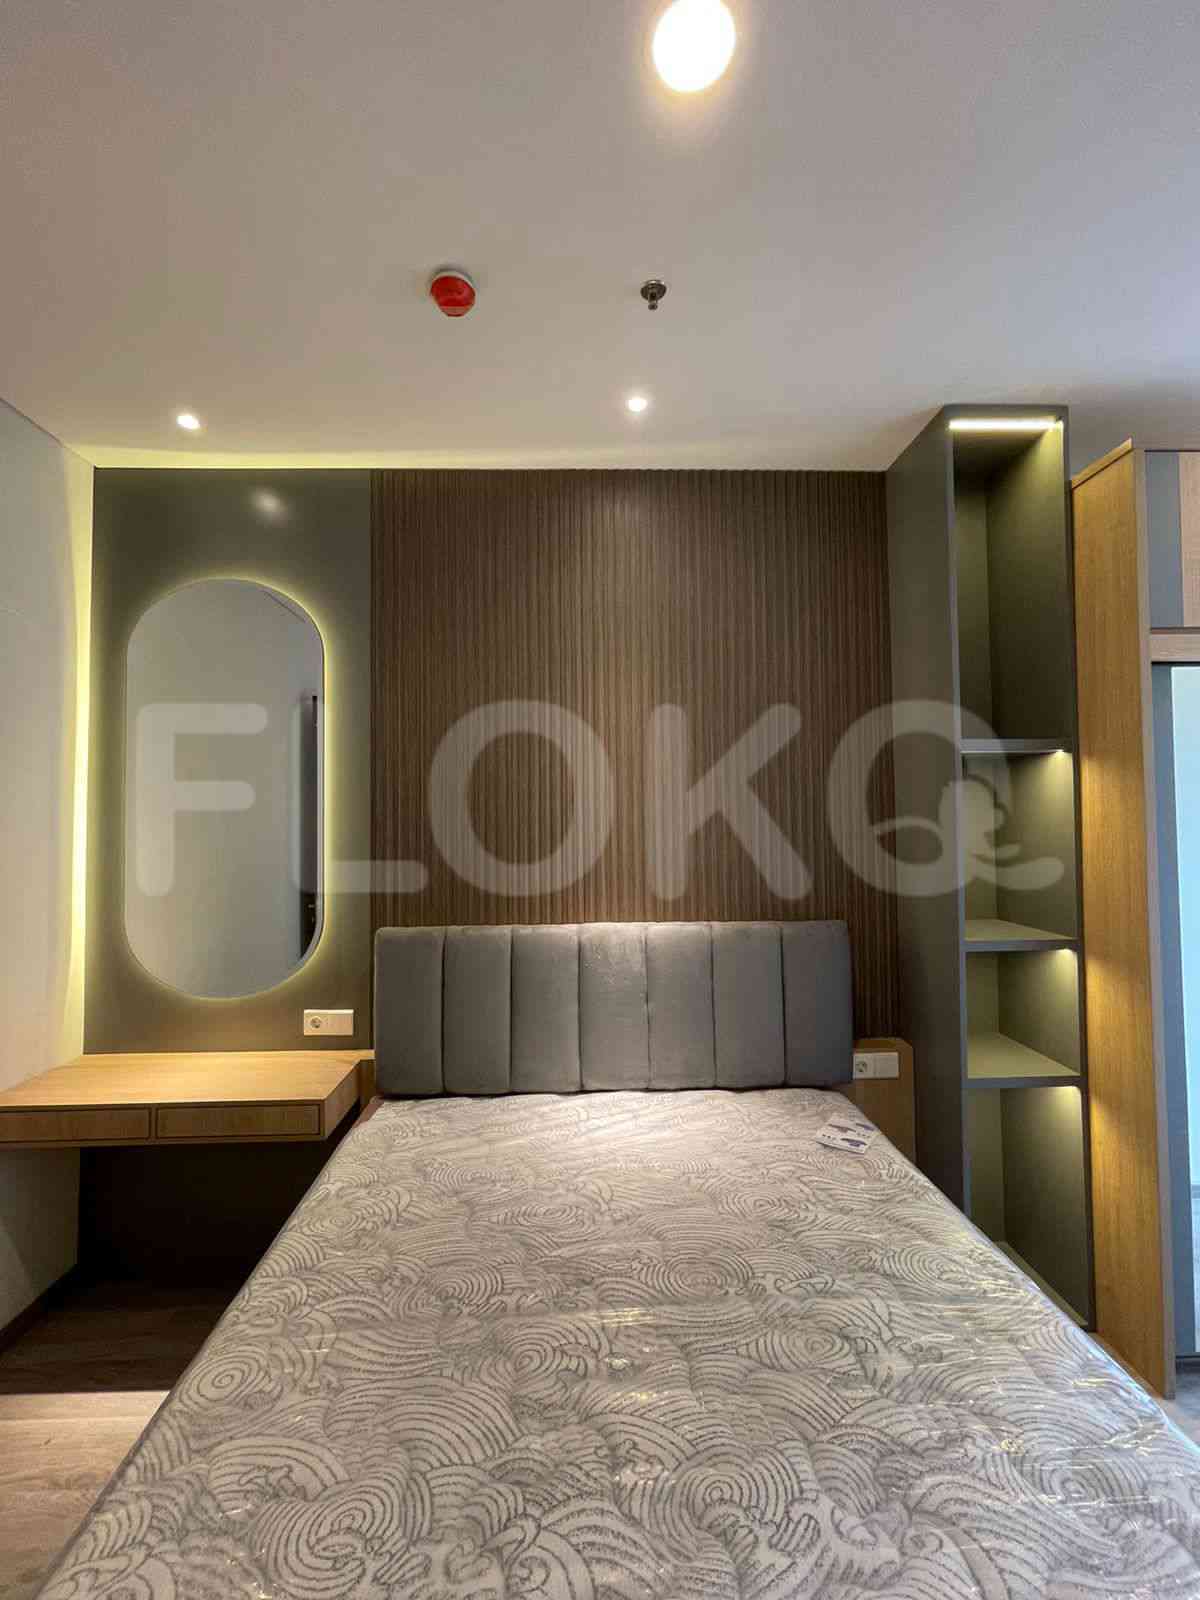 3 Bedroom on 10th Floor for Rent in Sudirman Suites Jakarta - fsuaf7 18